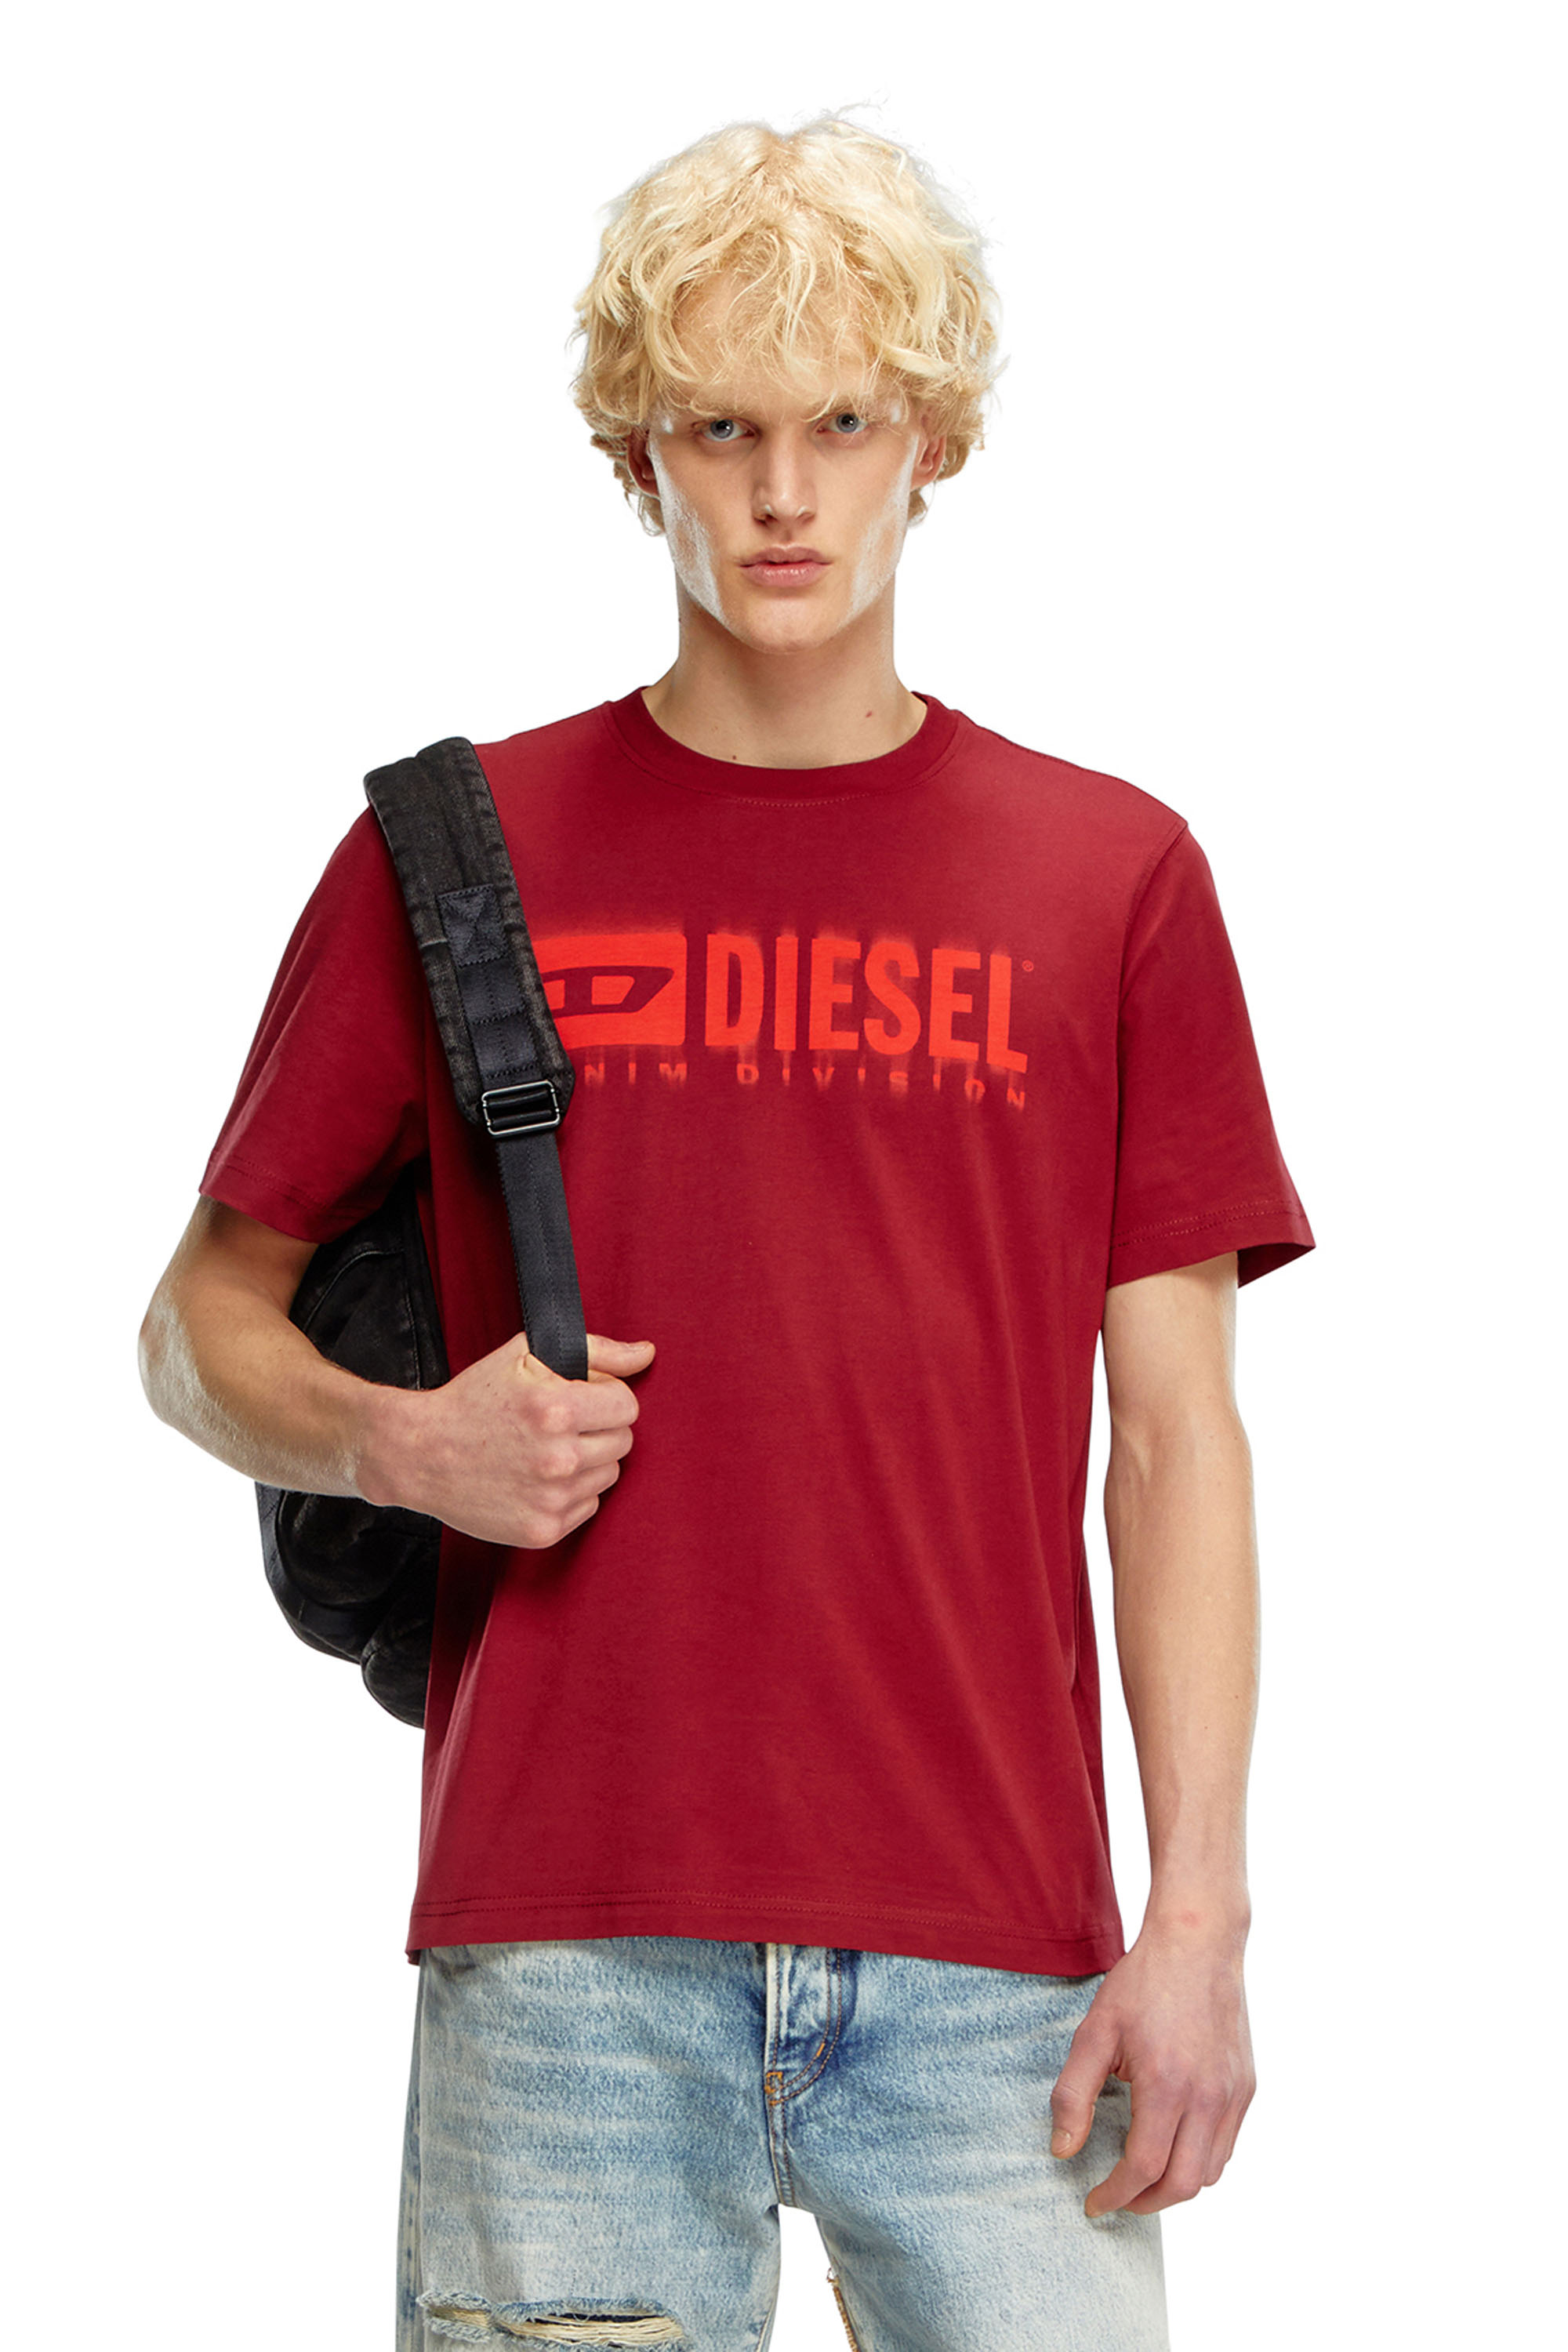 Diesel - Camiseta con logotipo Diesel borroso - Camisetas - Hombre - Rojo